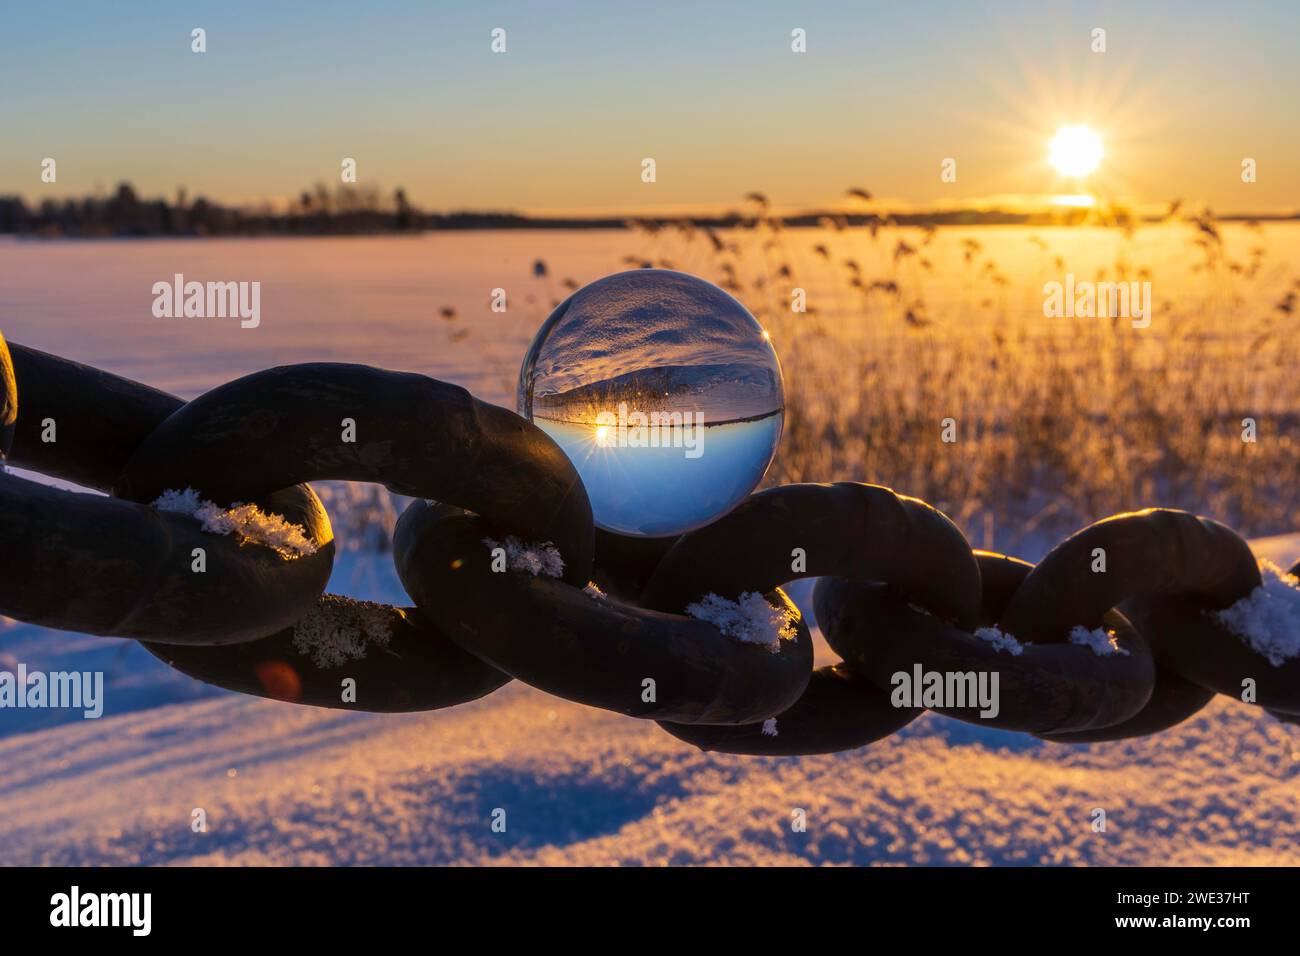 A glass ball on a chain link at sunset. Sandviken, Sweden Stock Photo